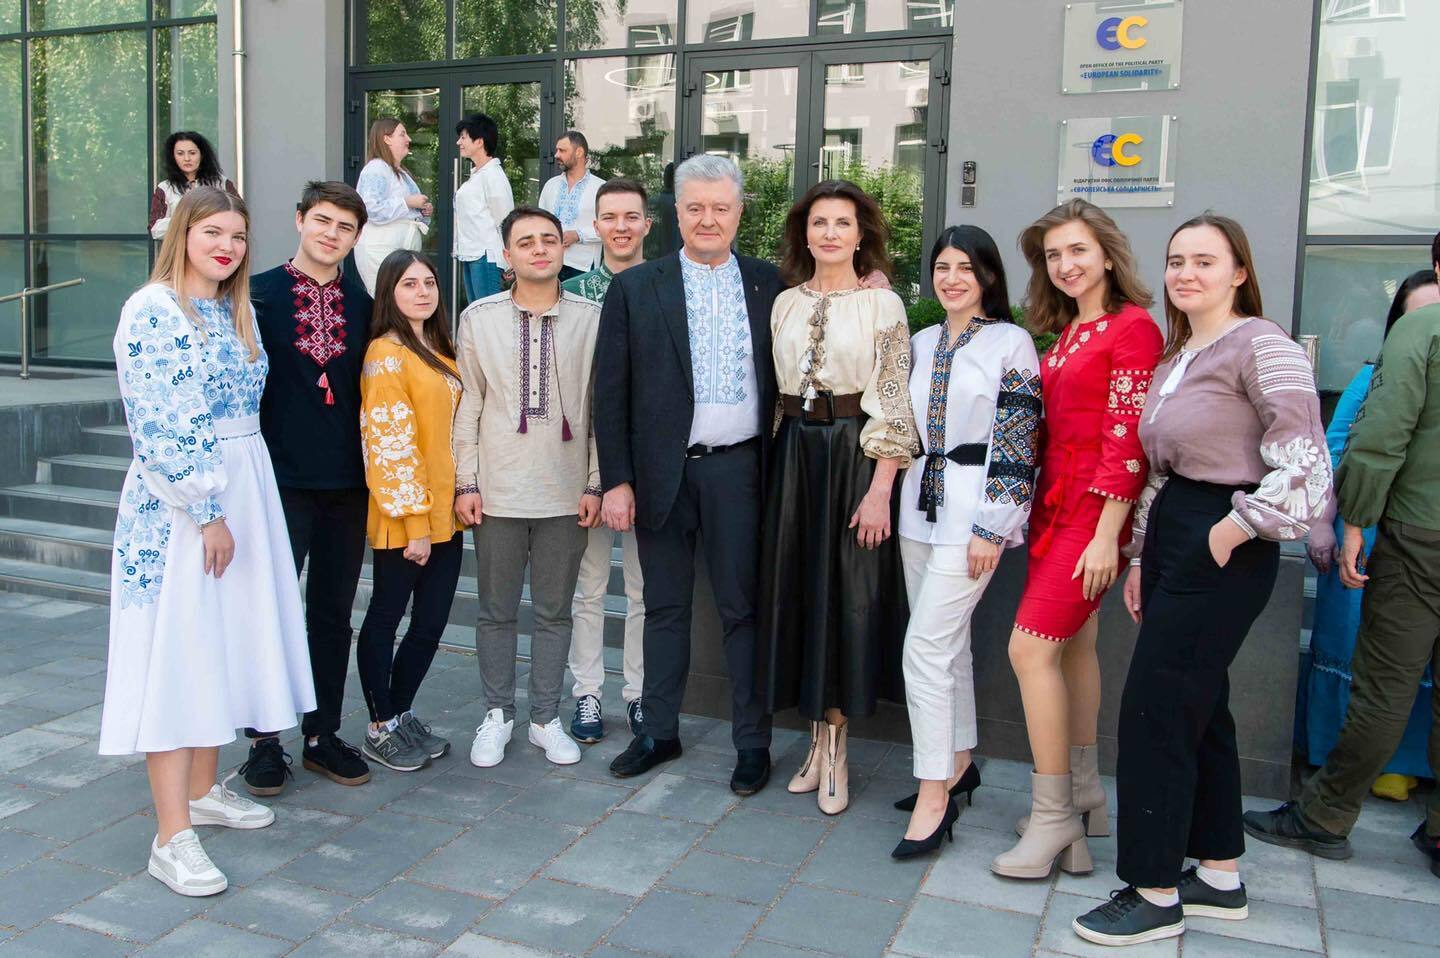 Вишиванка – це присяга на вірність Україні: Порошенко з командою показали фото в українських сорочках